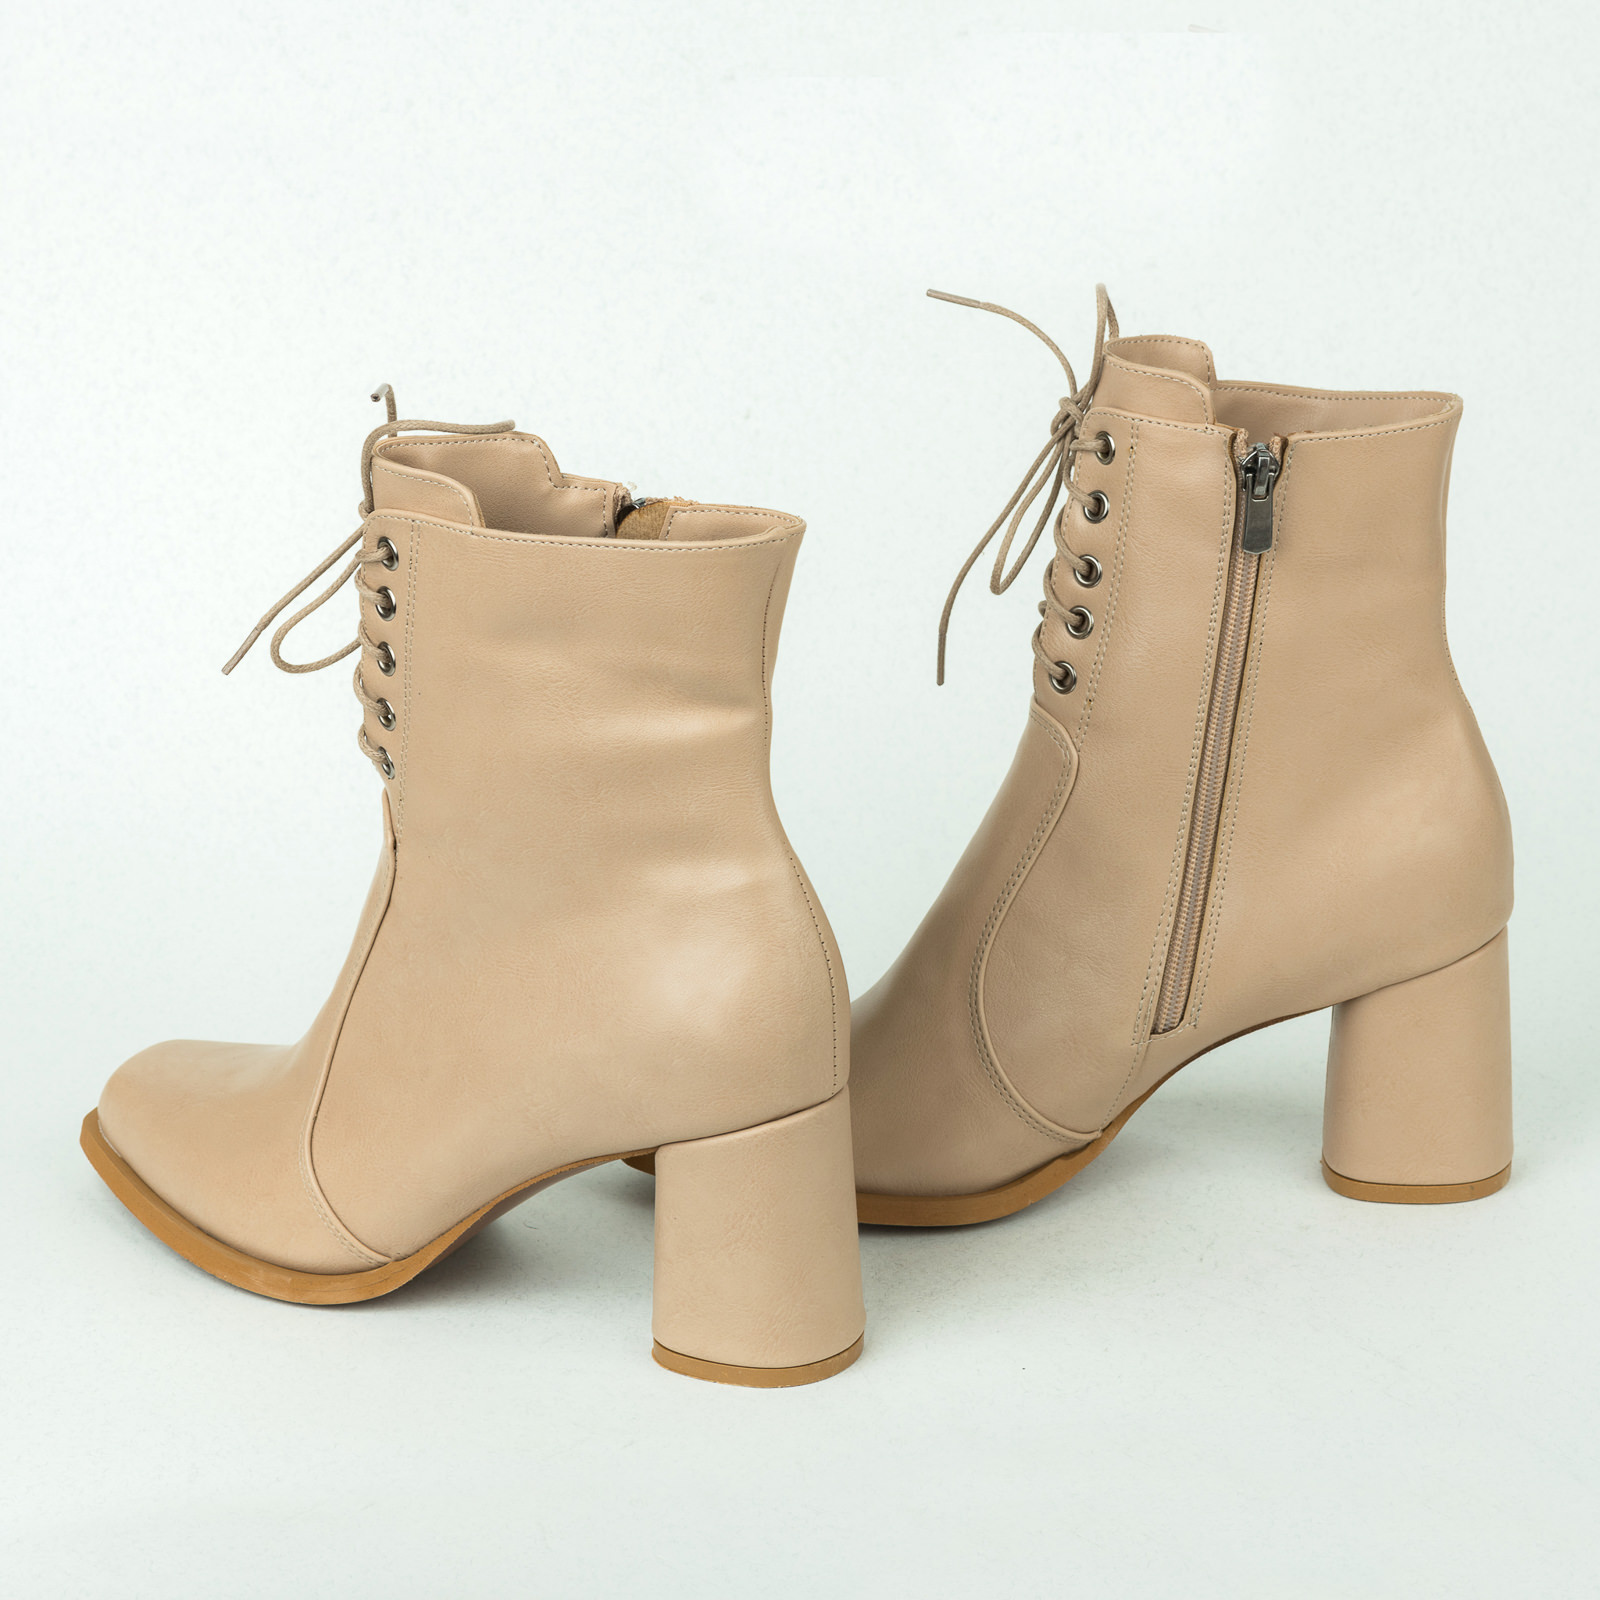 Women ankle boots B359 - BEIGE